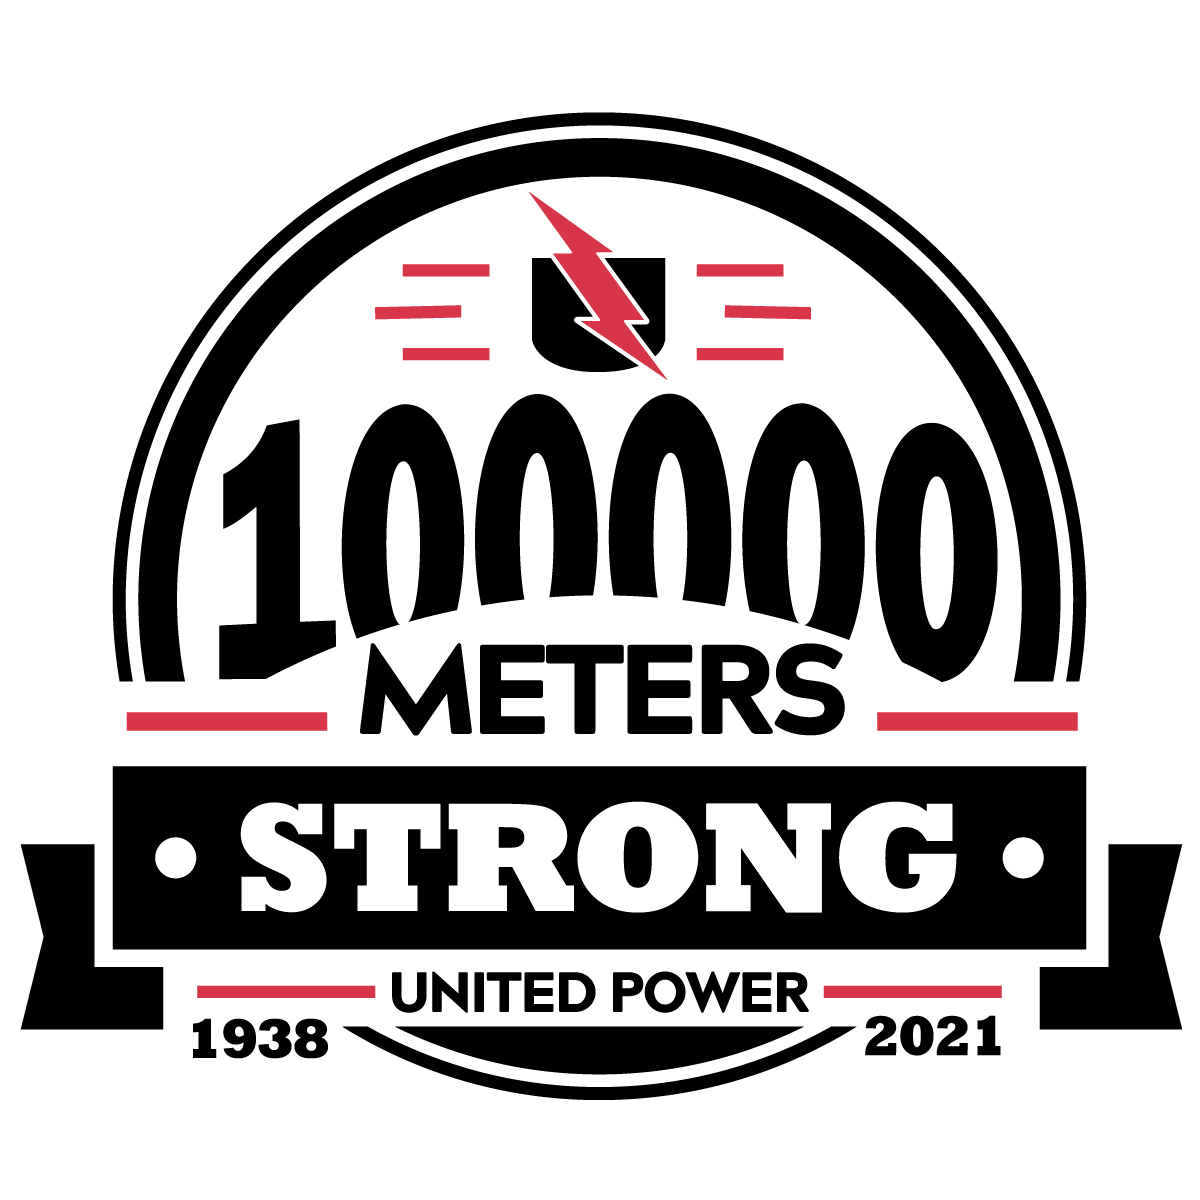 100000Strong_logo